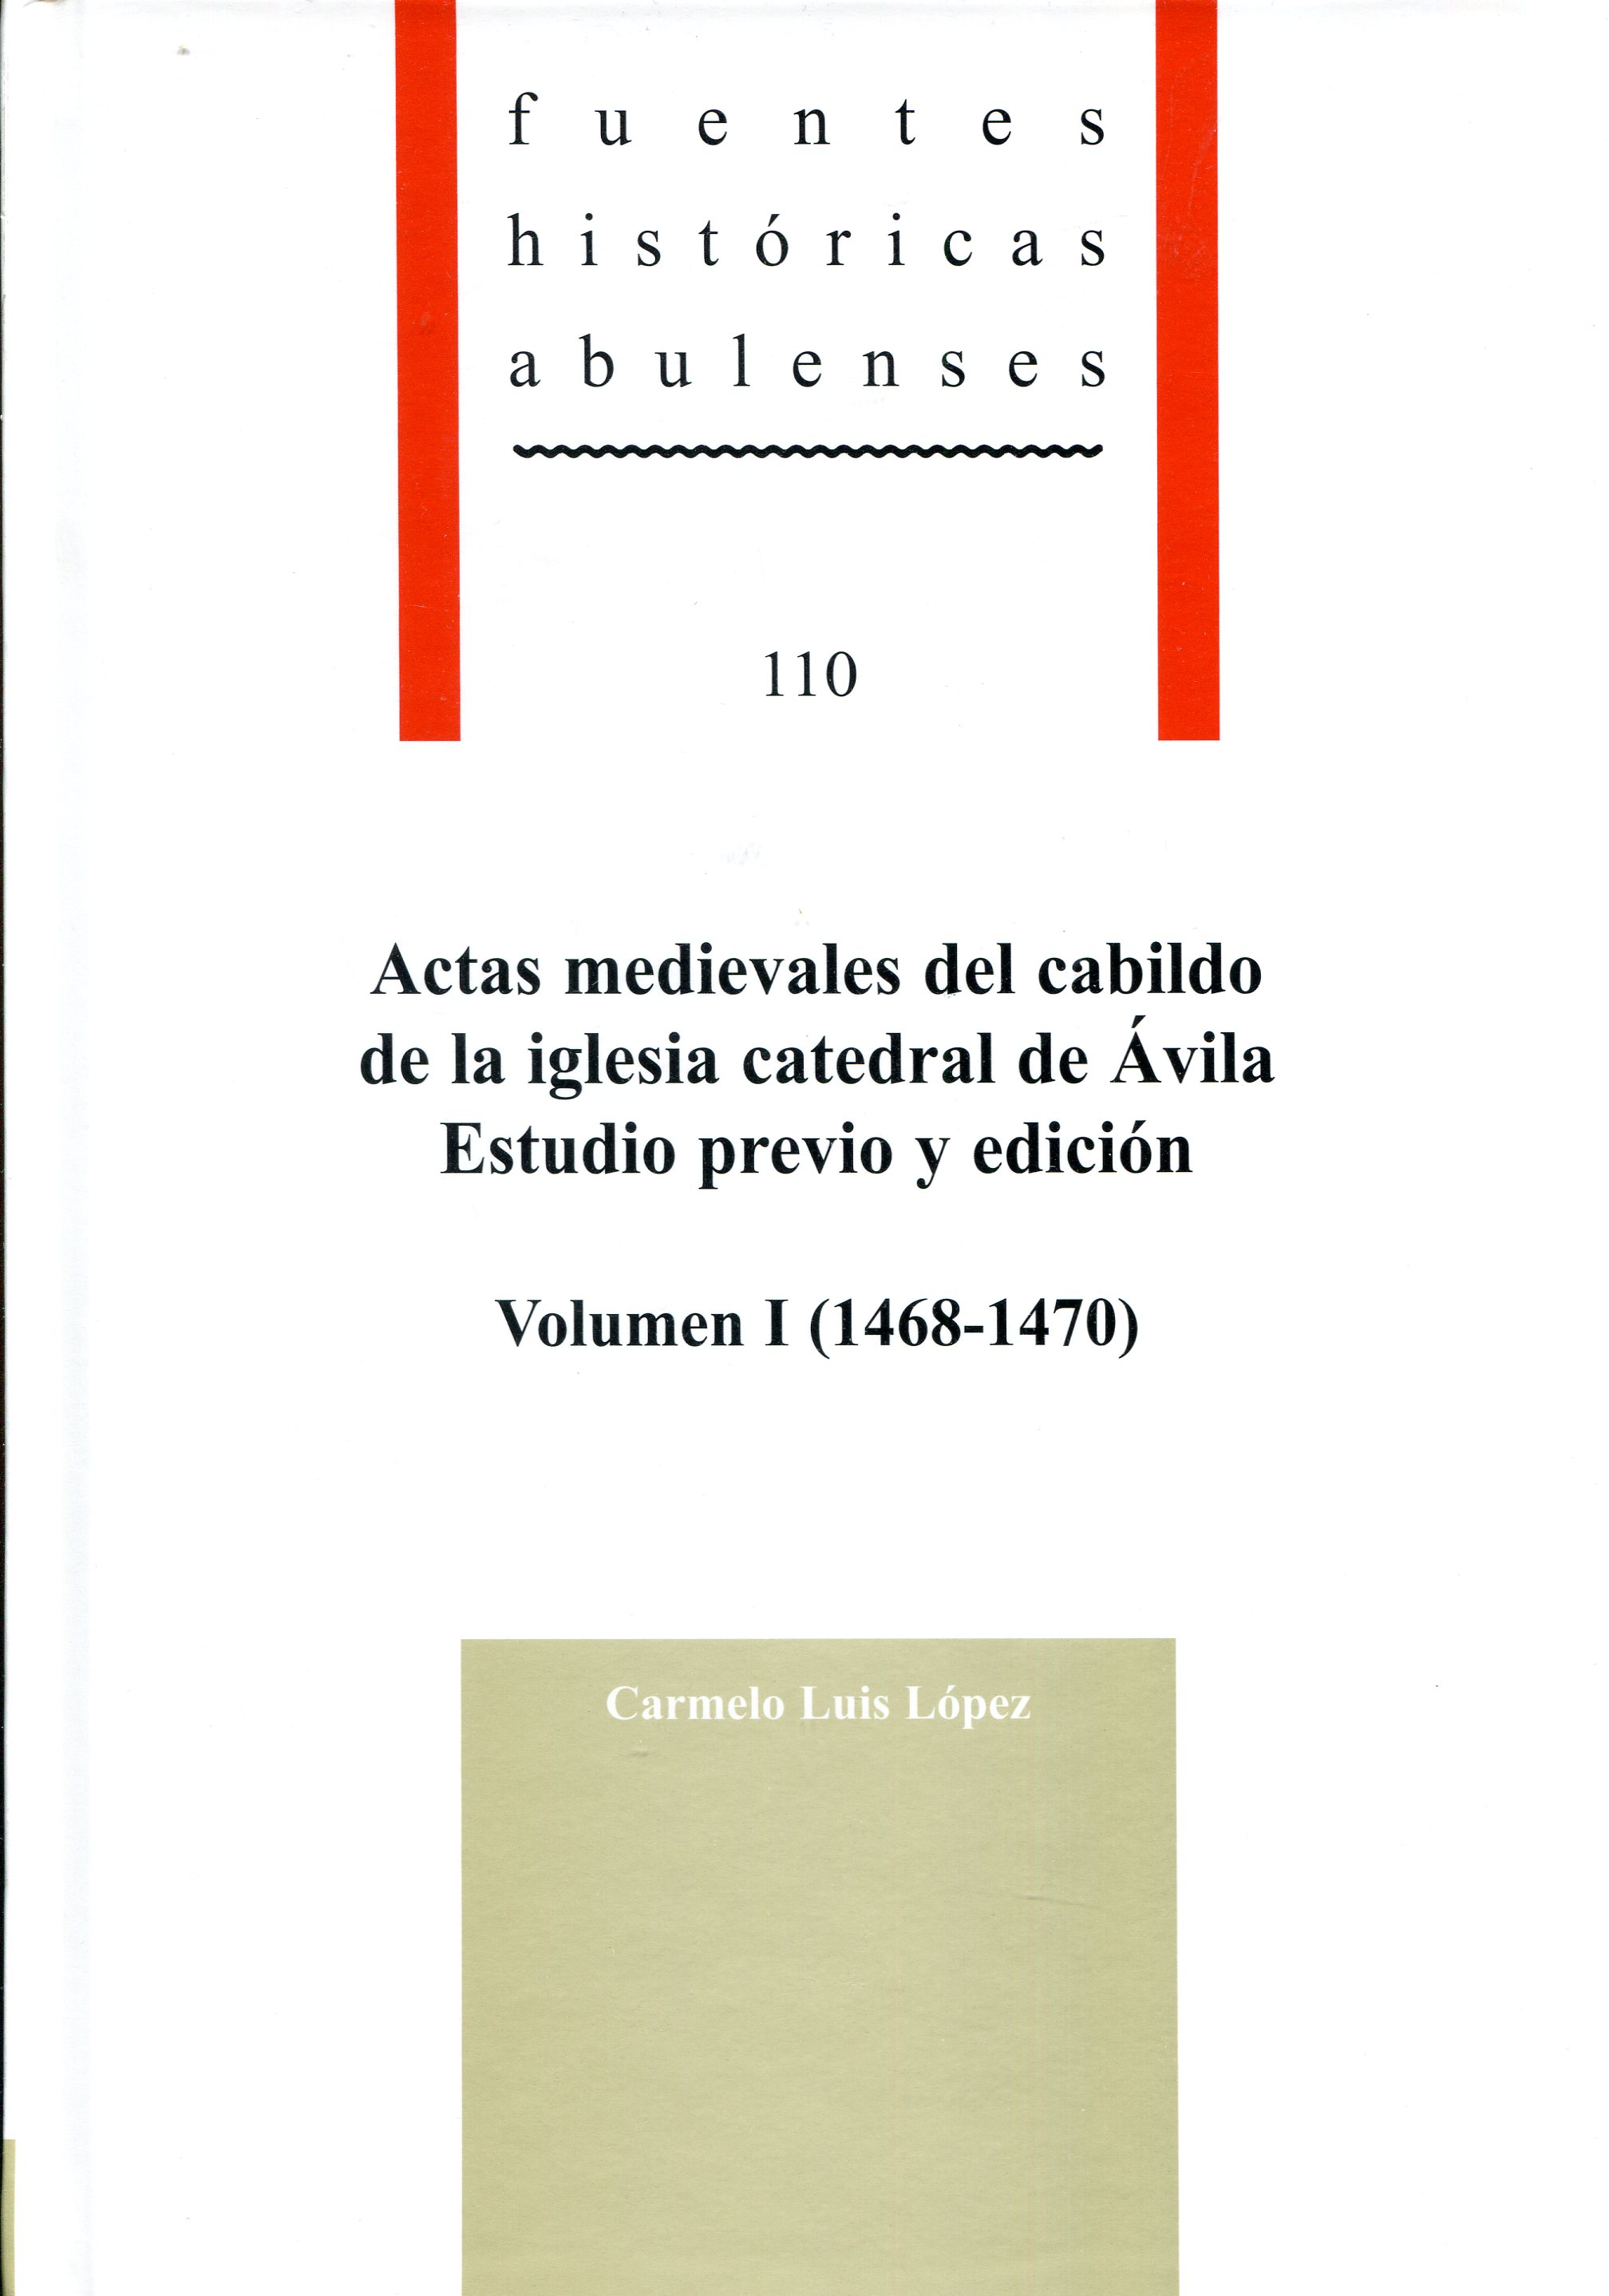 Actas medievales del cabildo de la iglesia catedral de Ávila: estudio previo y edición